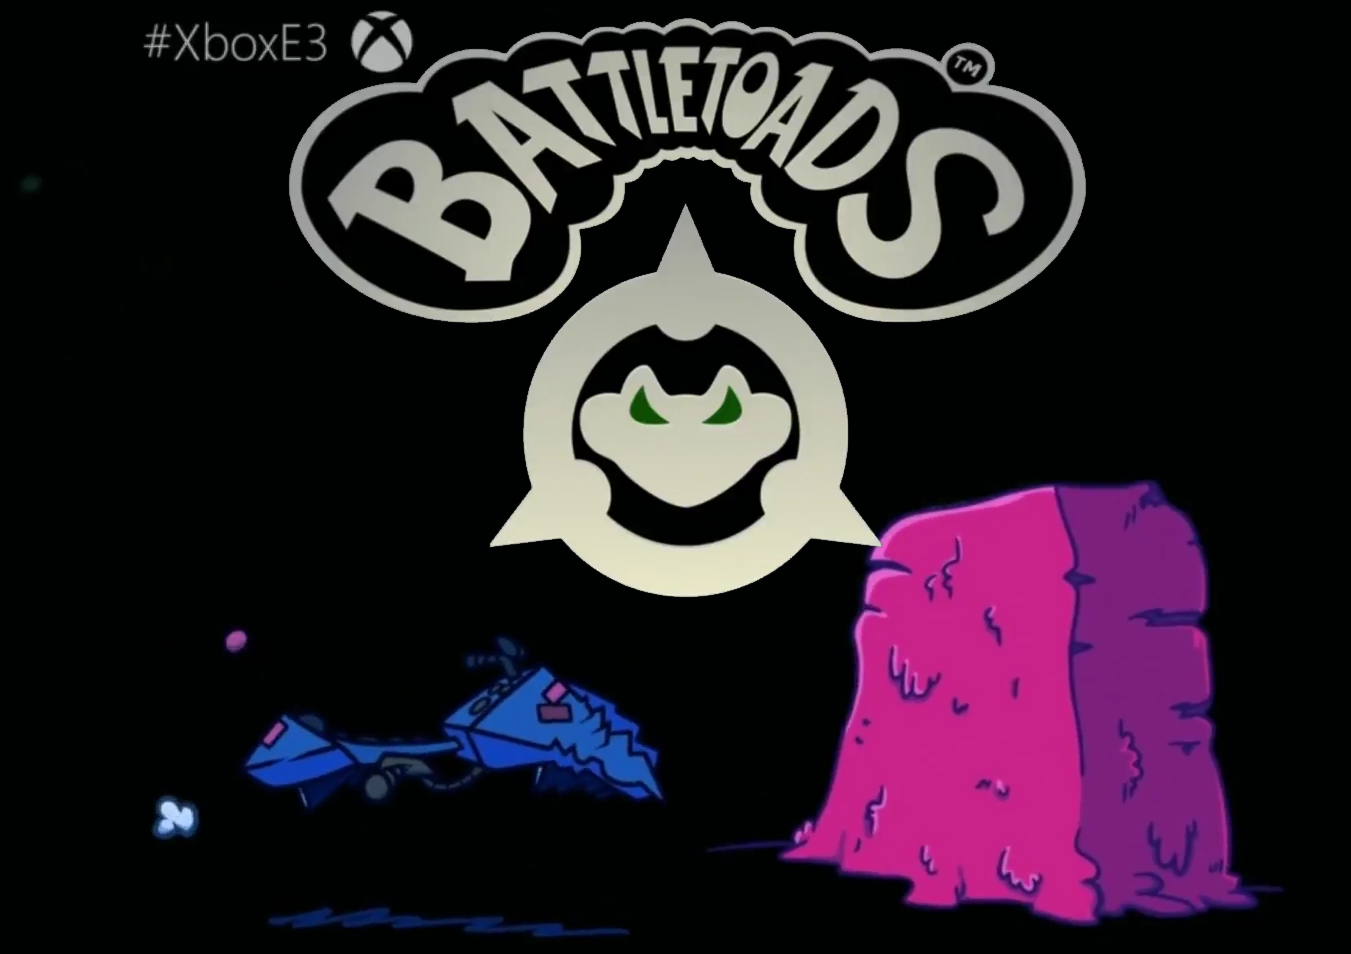 Announcement of Battletoads. - Battletoads, 